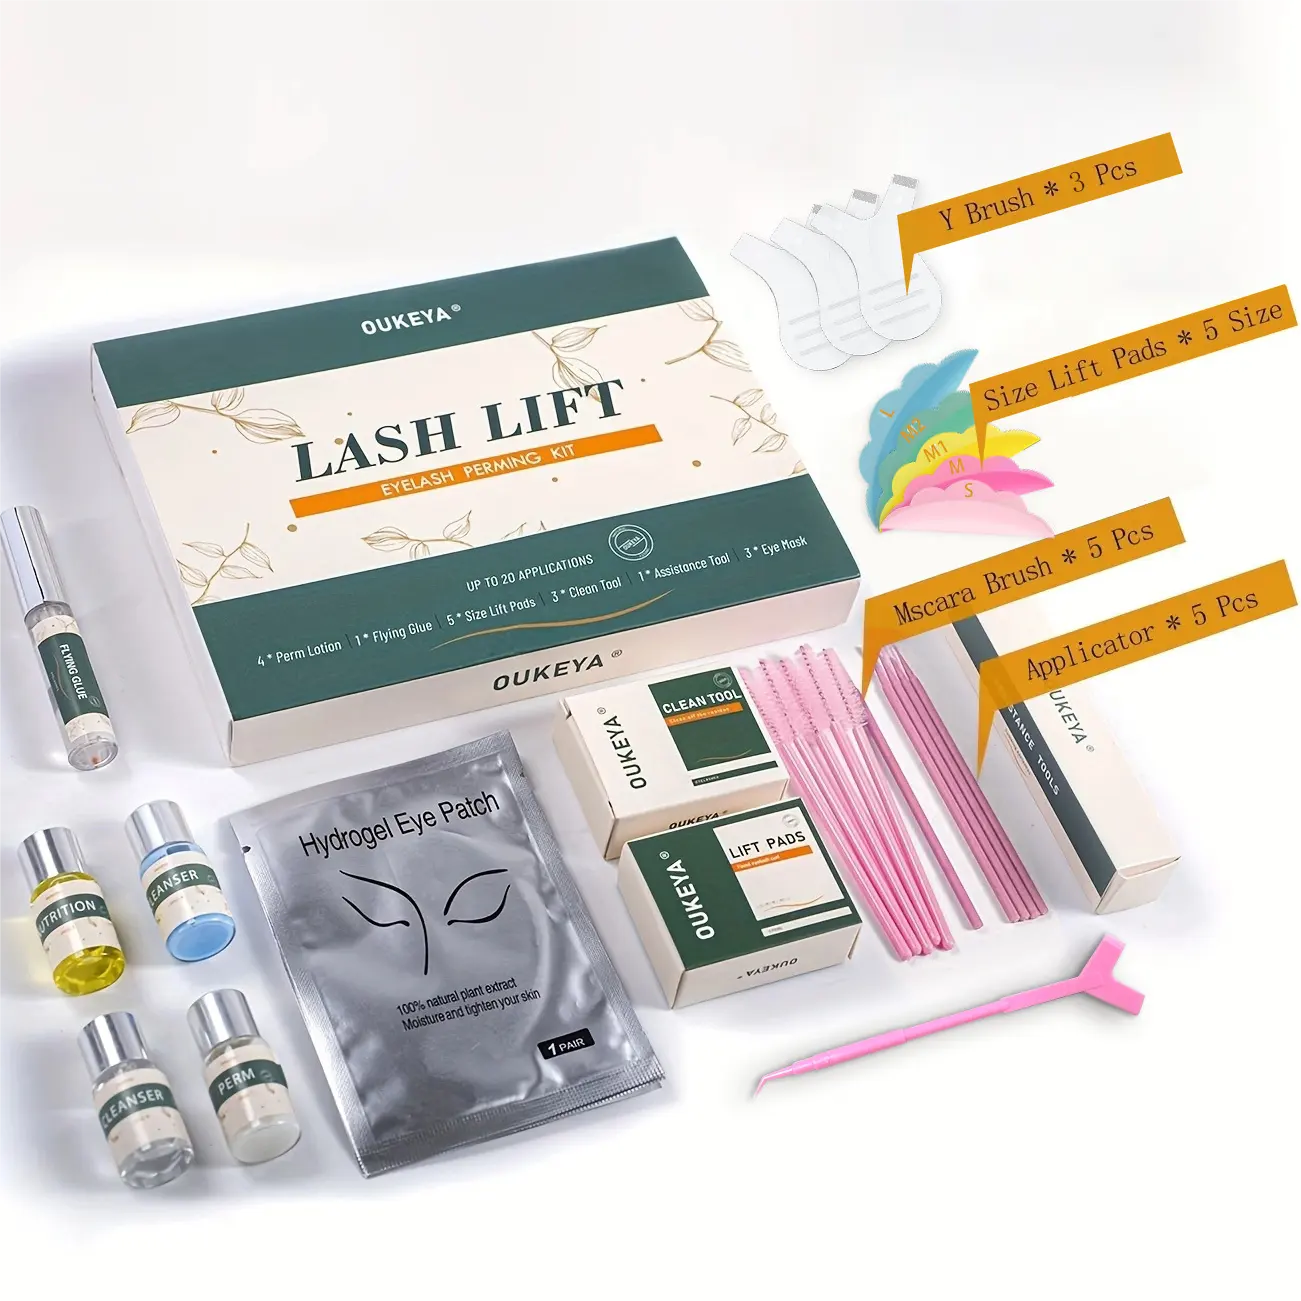 Lash Lift Sachet Kit Lash Perm Kit Fast Eyelash Lifting 5 Minutes Diy Disposable Sachet Professional Lash Perming Kit